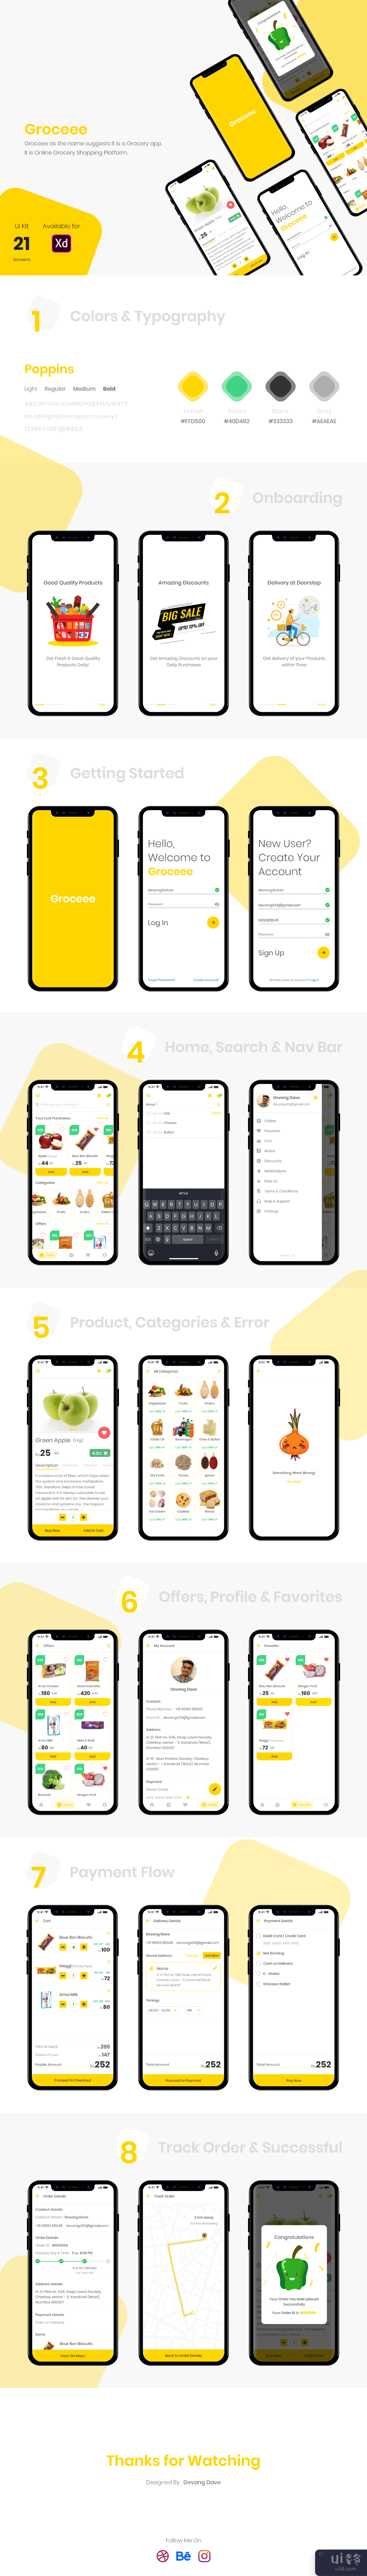 杂货购物应用挑战 - Groceee(Groceries Shopping App Challenge - Groceee)插图